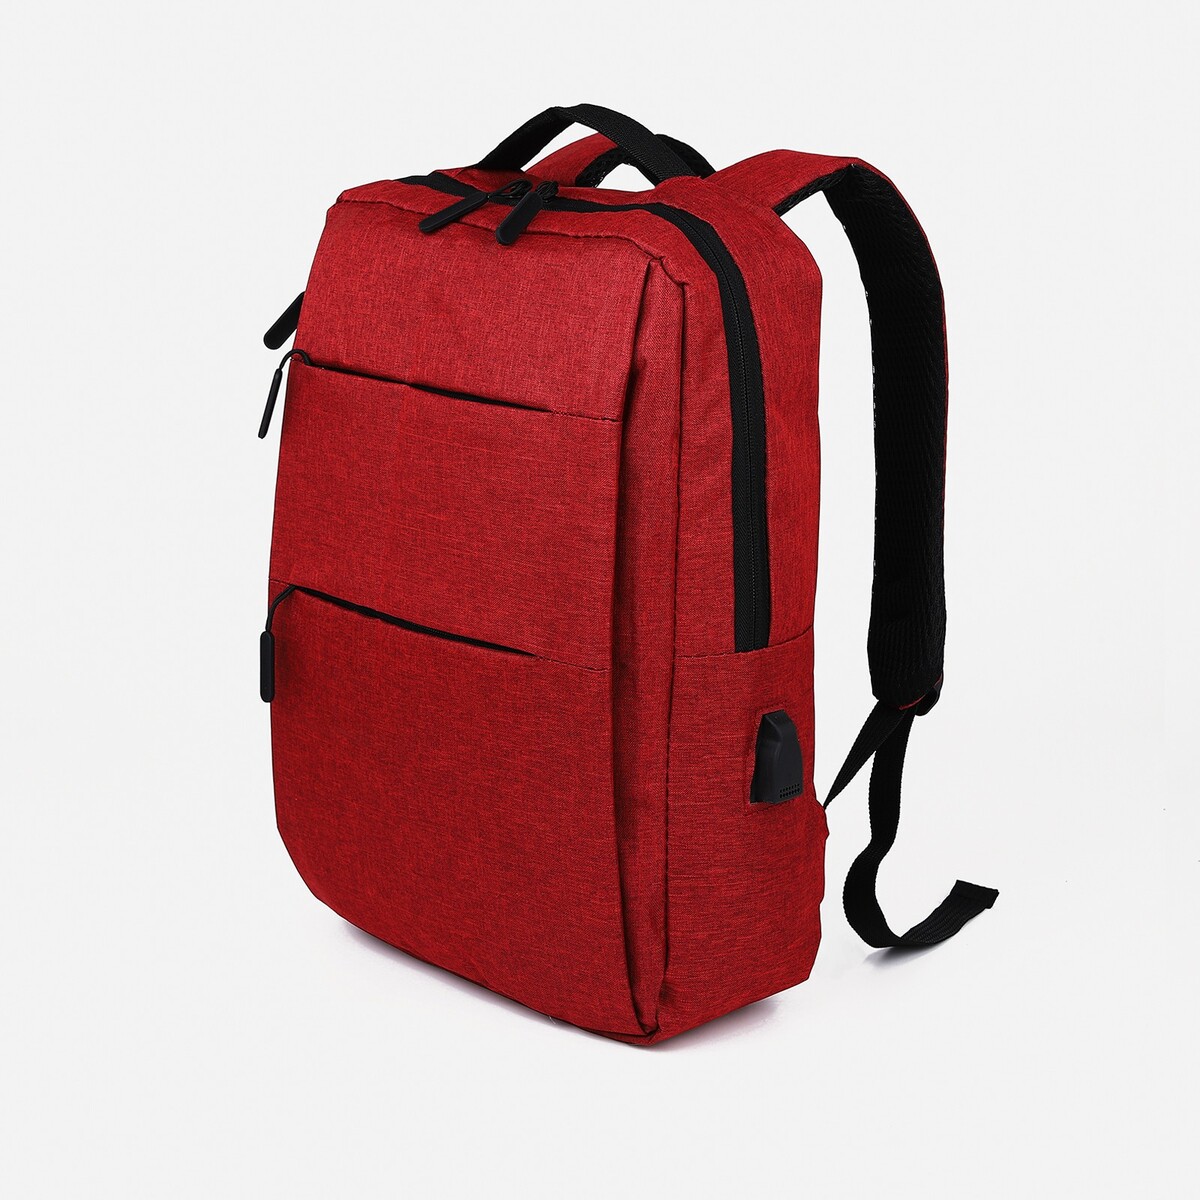 Рюкзак мужской на молнии, 4 наружных кармана, с usb, цвет бордовый рюкзак wenger urban contemporary 605024 14 бордовый 14 л